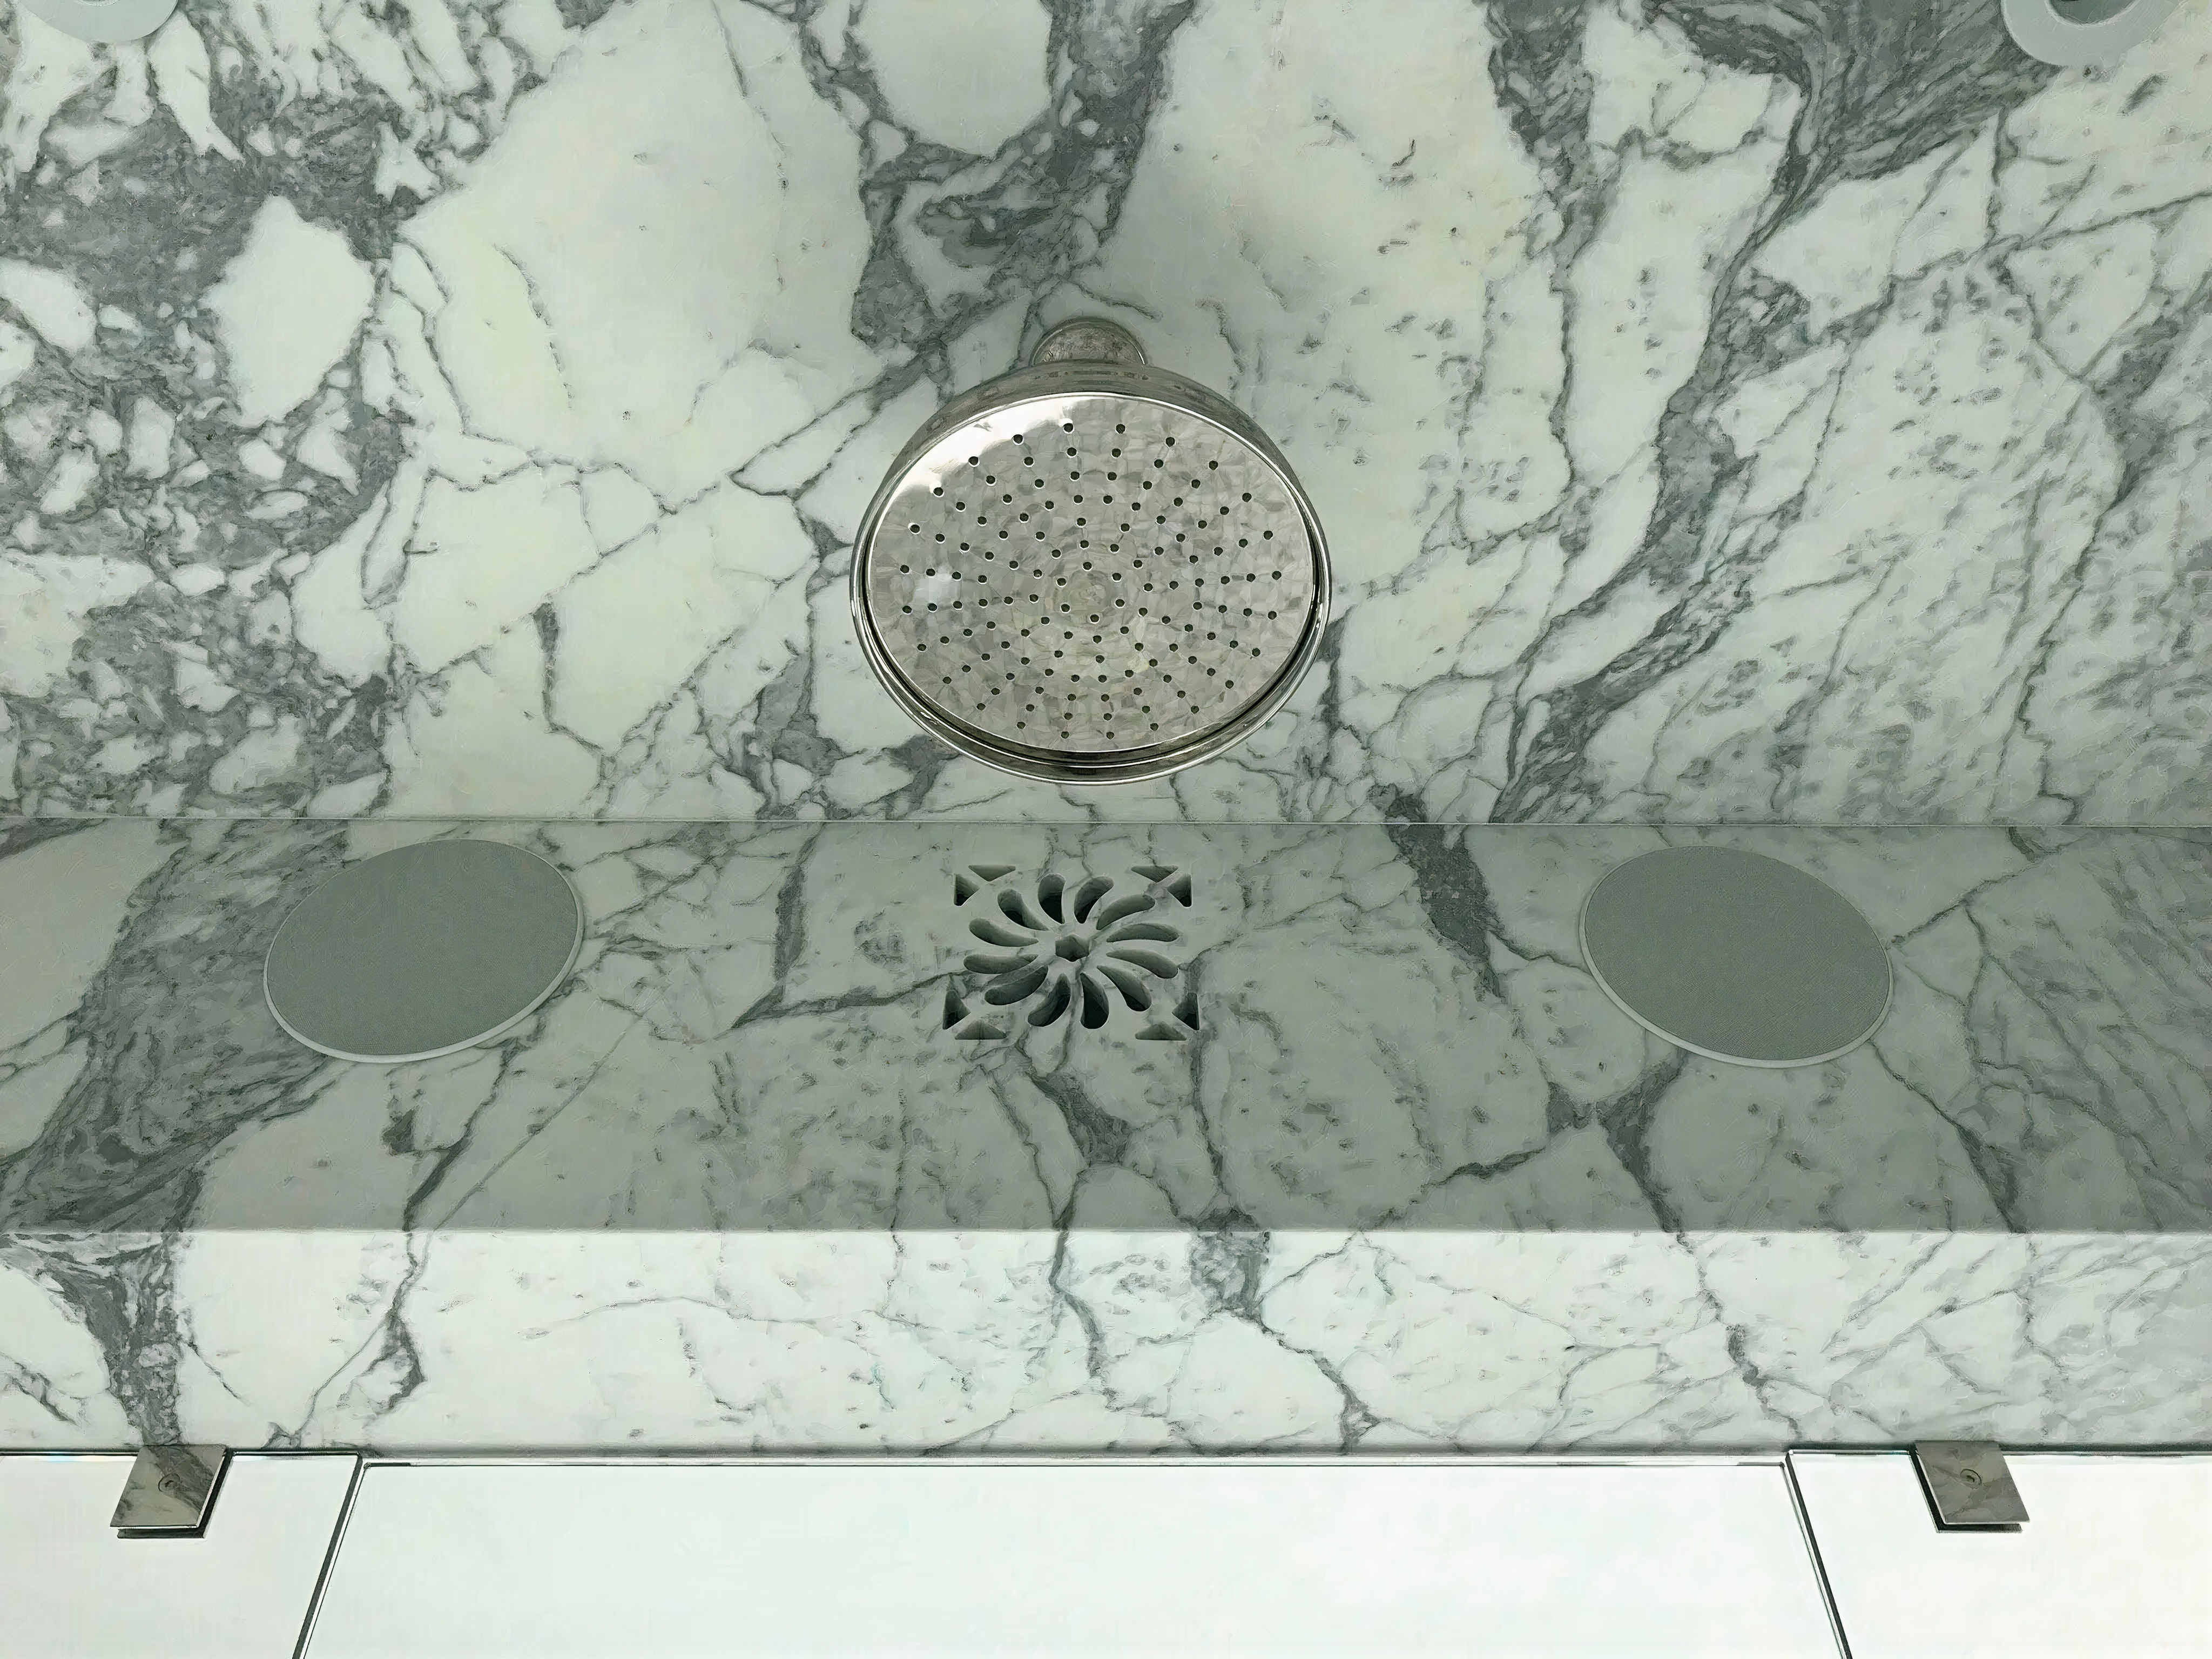 Waterjet-cut design in marble in a bathroom shower